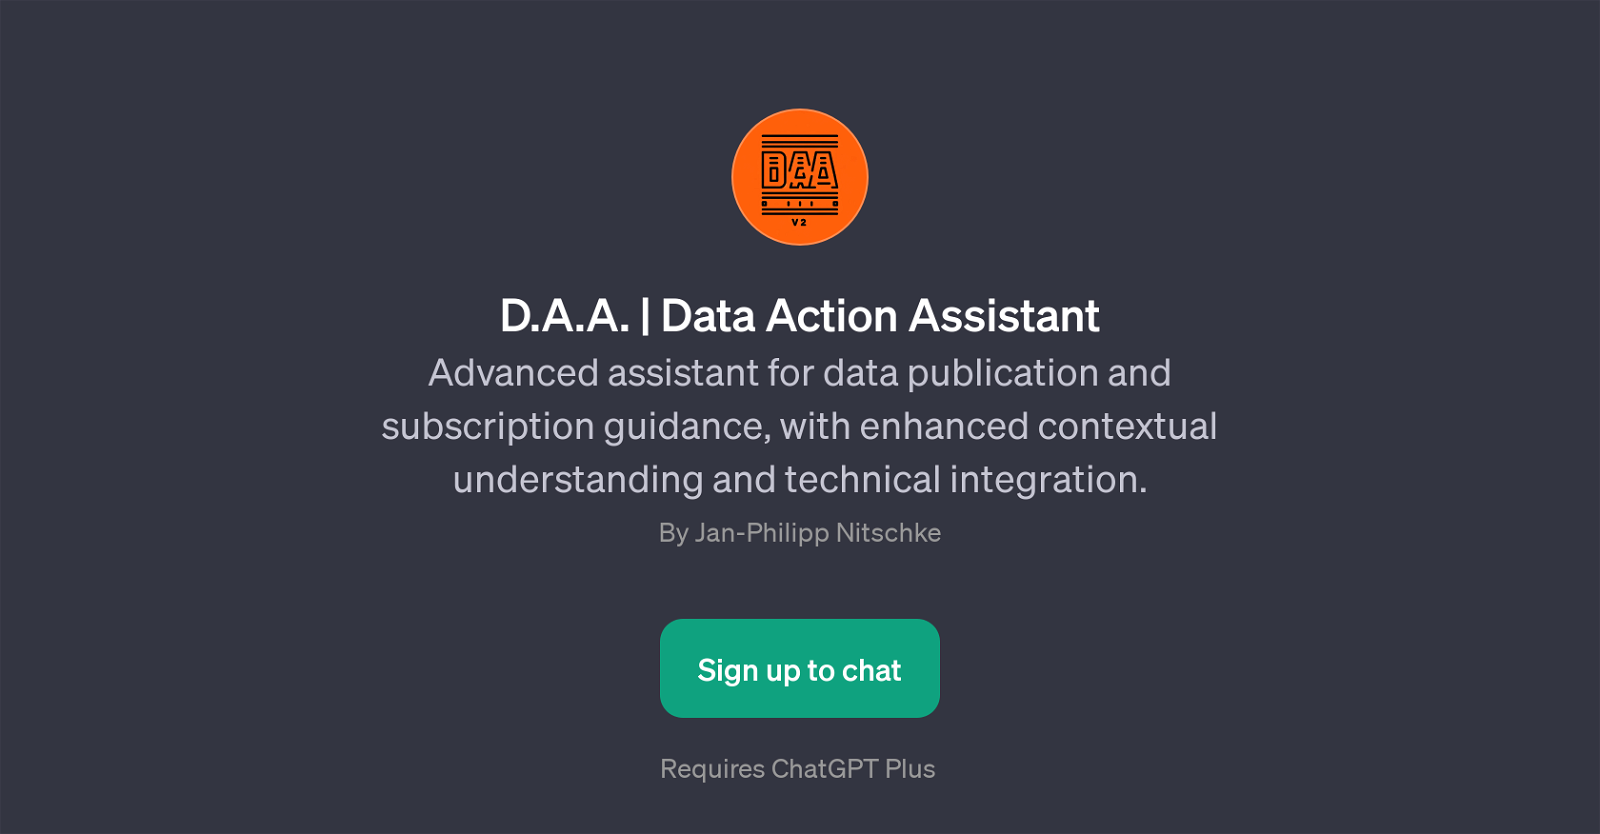 D.A.A. | Data Action Assistant website